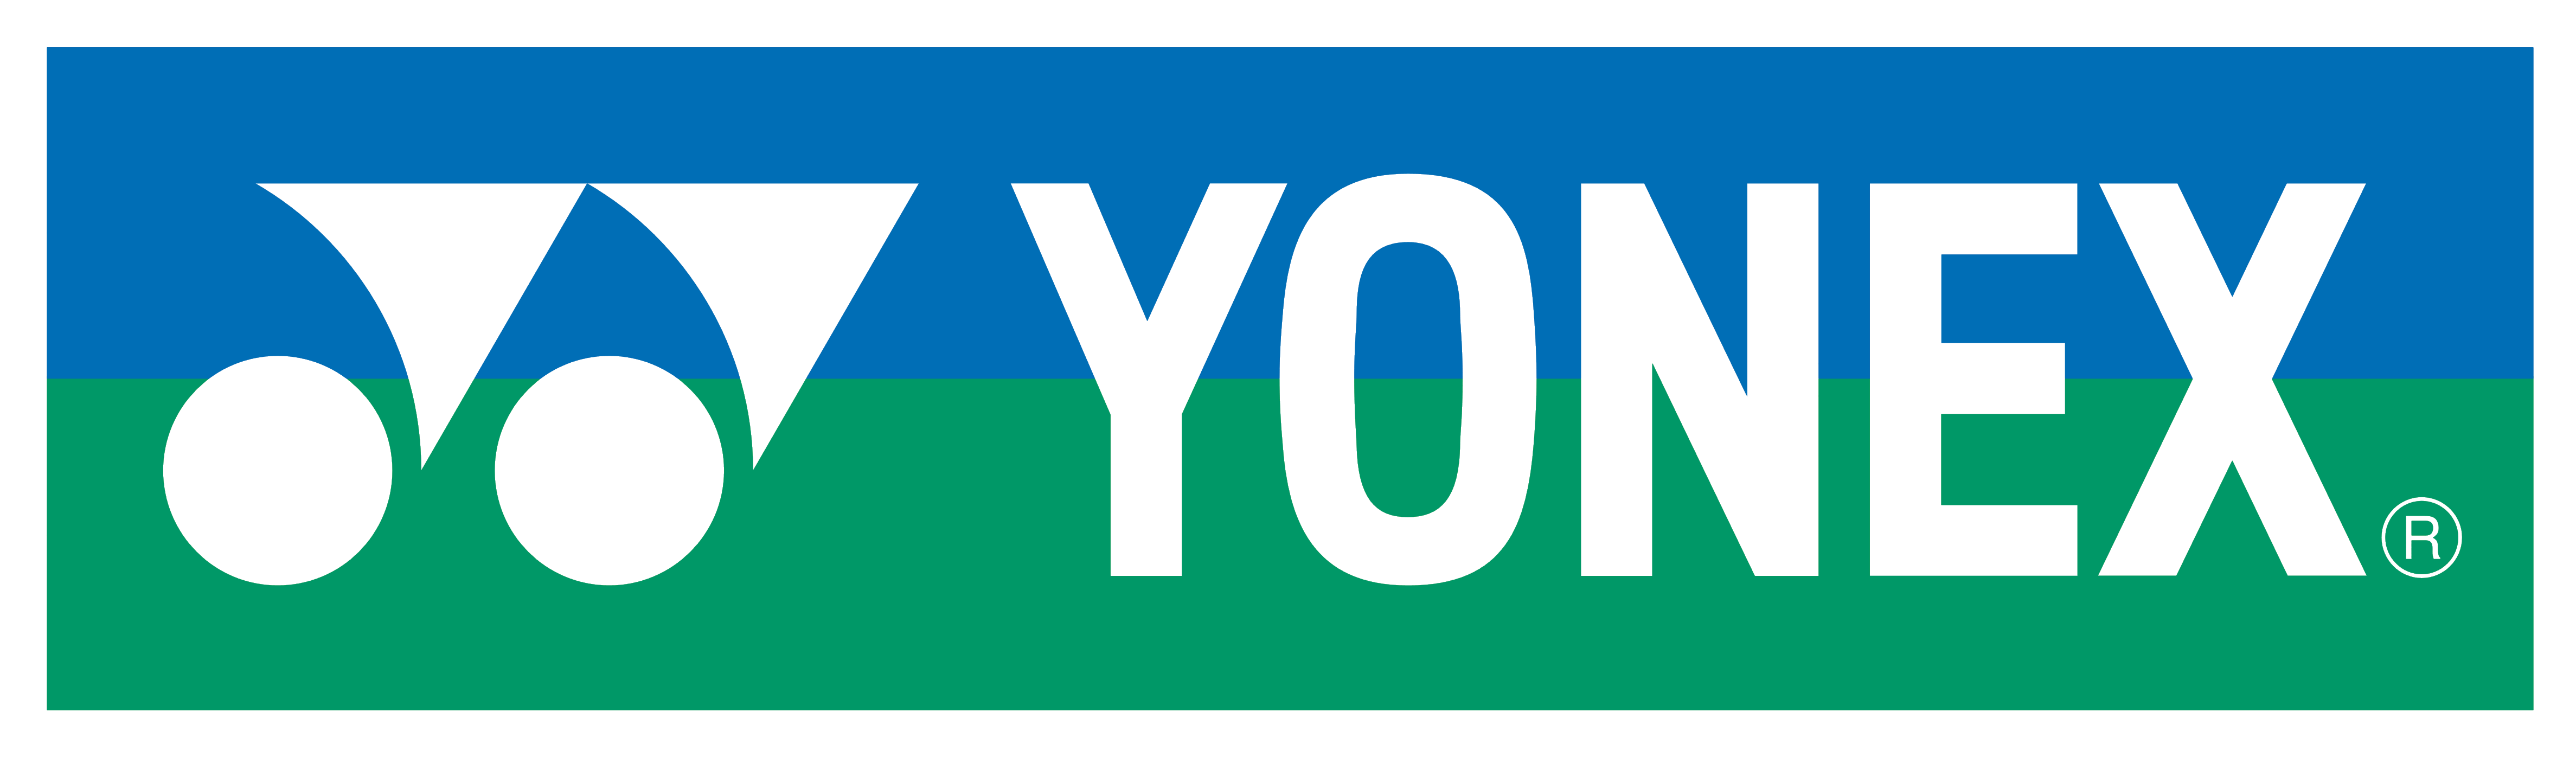 Yonex logo, logotype